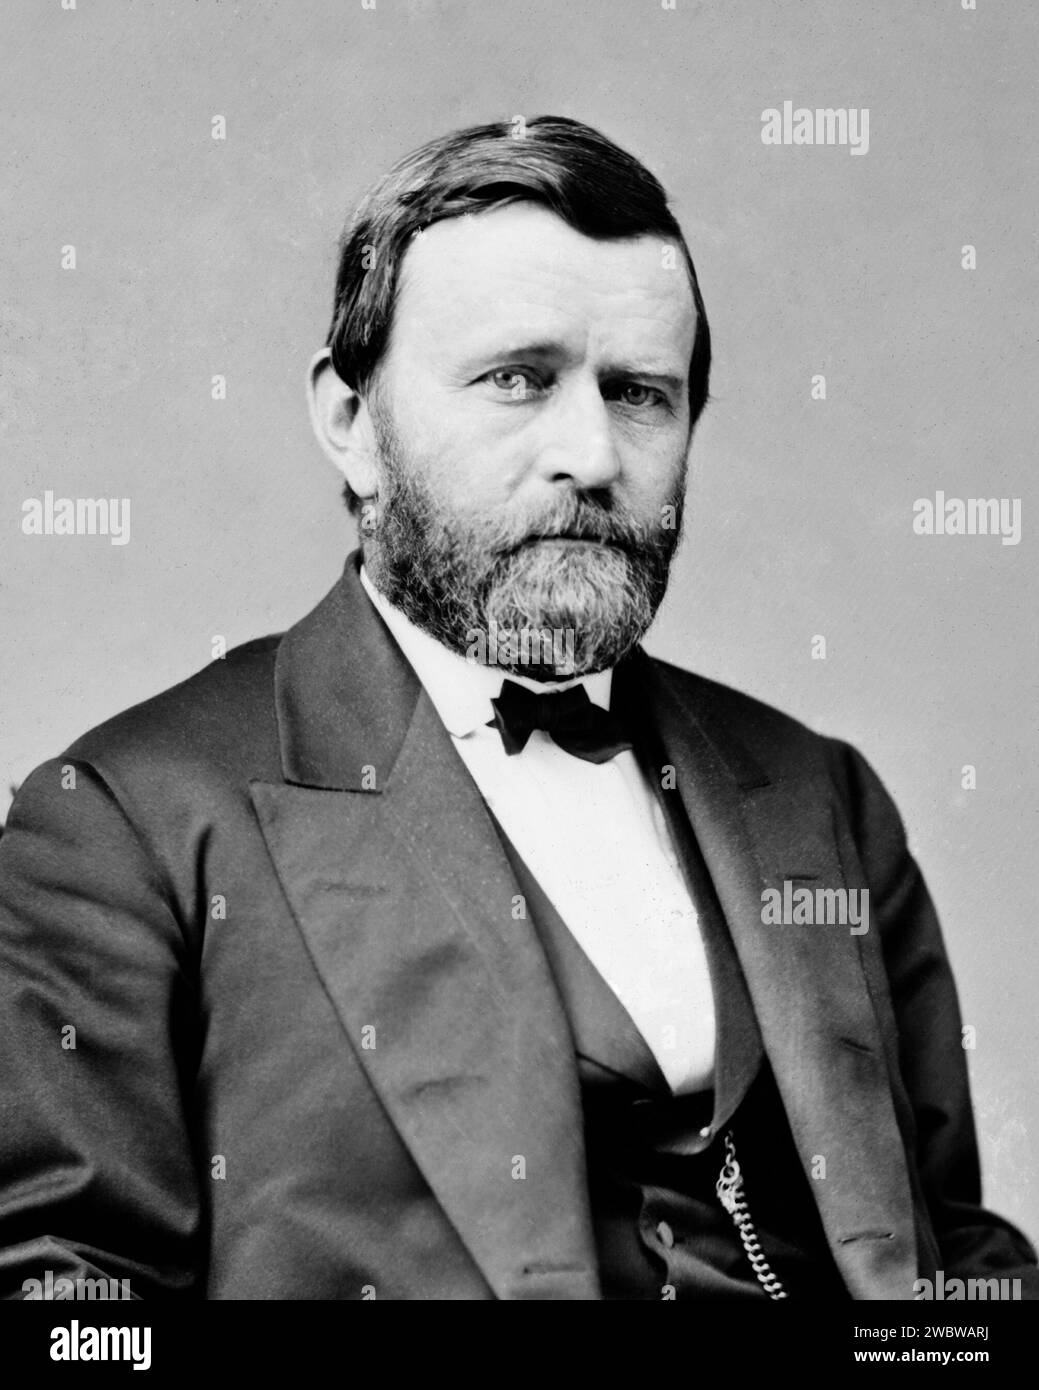 Porträt des republikanischen 18. Präsidenten der Vereinigten Staaten, Ulysses S. Grant. Um 1870. Stockfoto